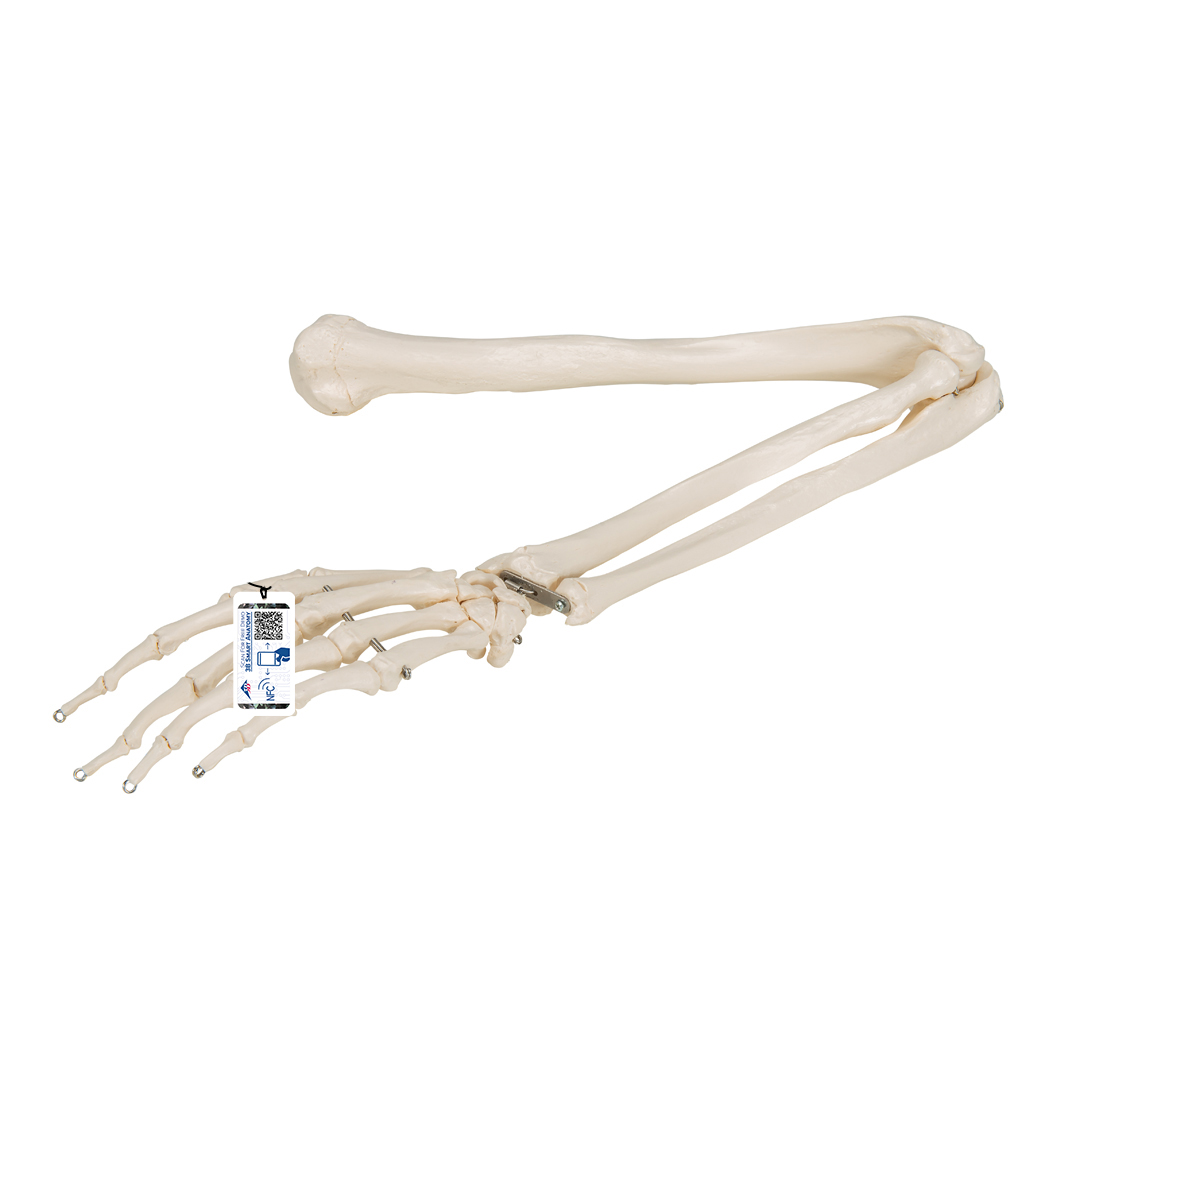 Armskelett Modell mit flexiblem Ellbogengelenk - 3B Smart Anatomy, Bestellnummer 1019371, A45, 3B Scientific